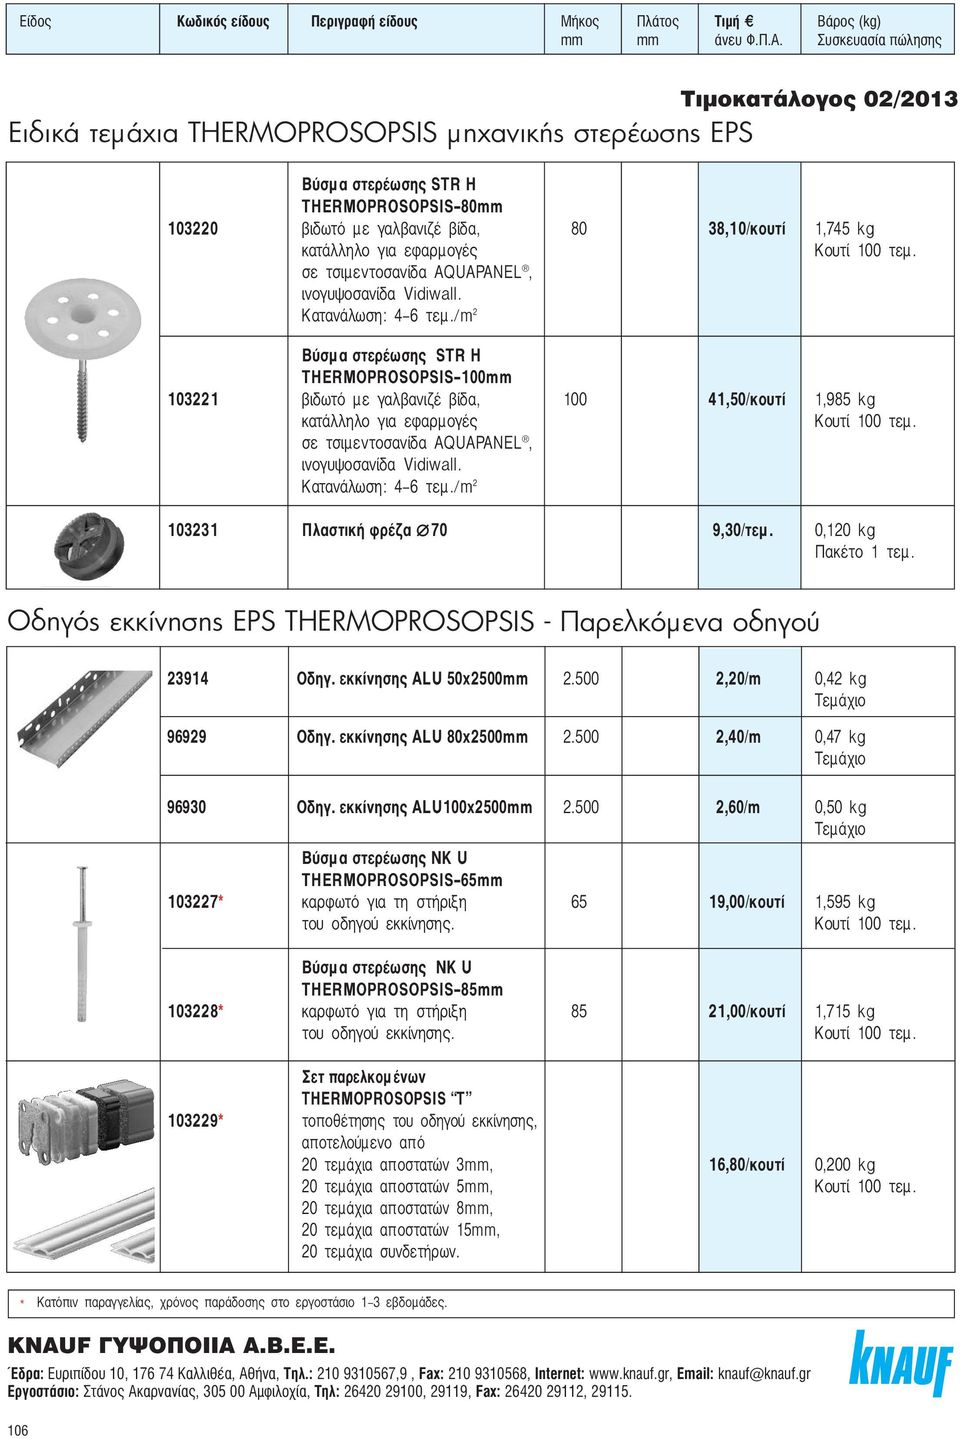 Βύσμ α στερέωσης STR H THERMOPROSOPSIS-100mm 103221 βιδωτό με γαλβανιζέ βίδα, 100 41,50/κουτί 1,985 kg κατάλληλο για εφαρμογές σε τσιμεντοσανίδα  103231 Πλαστική φρέζα 70 9,30/τεμ.